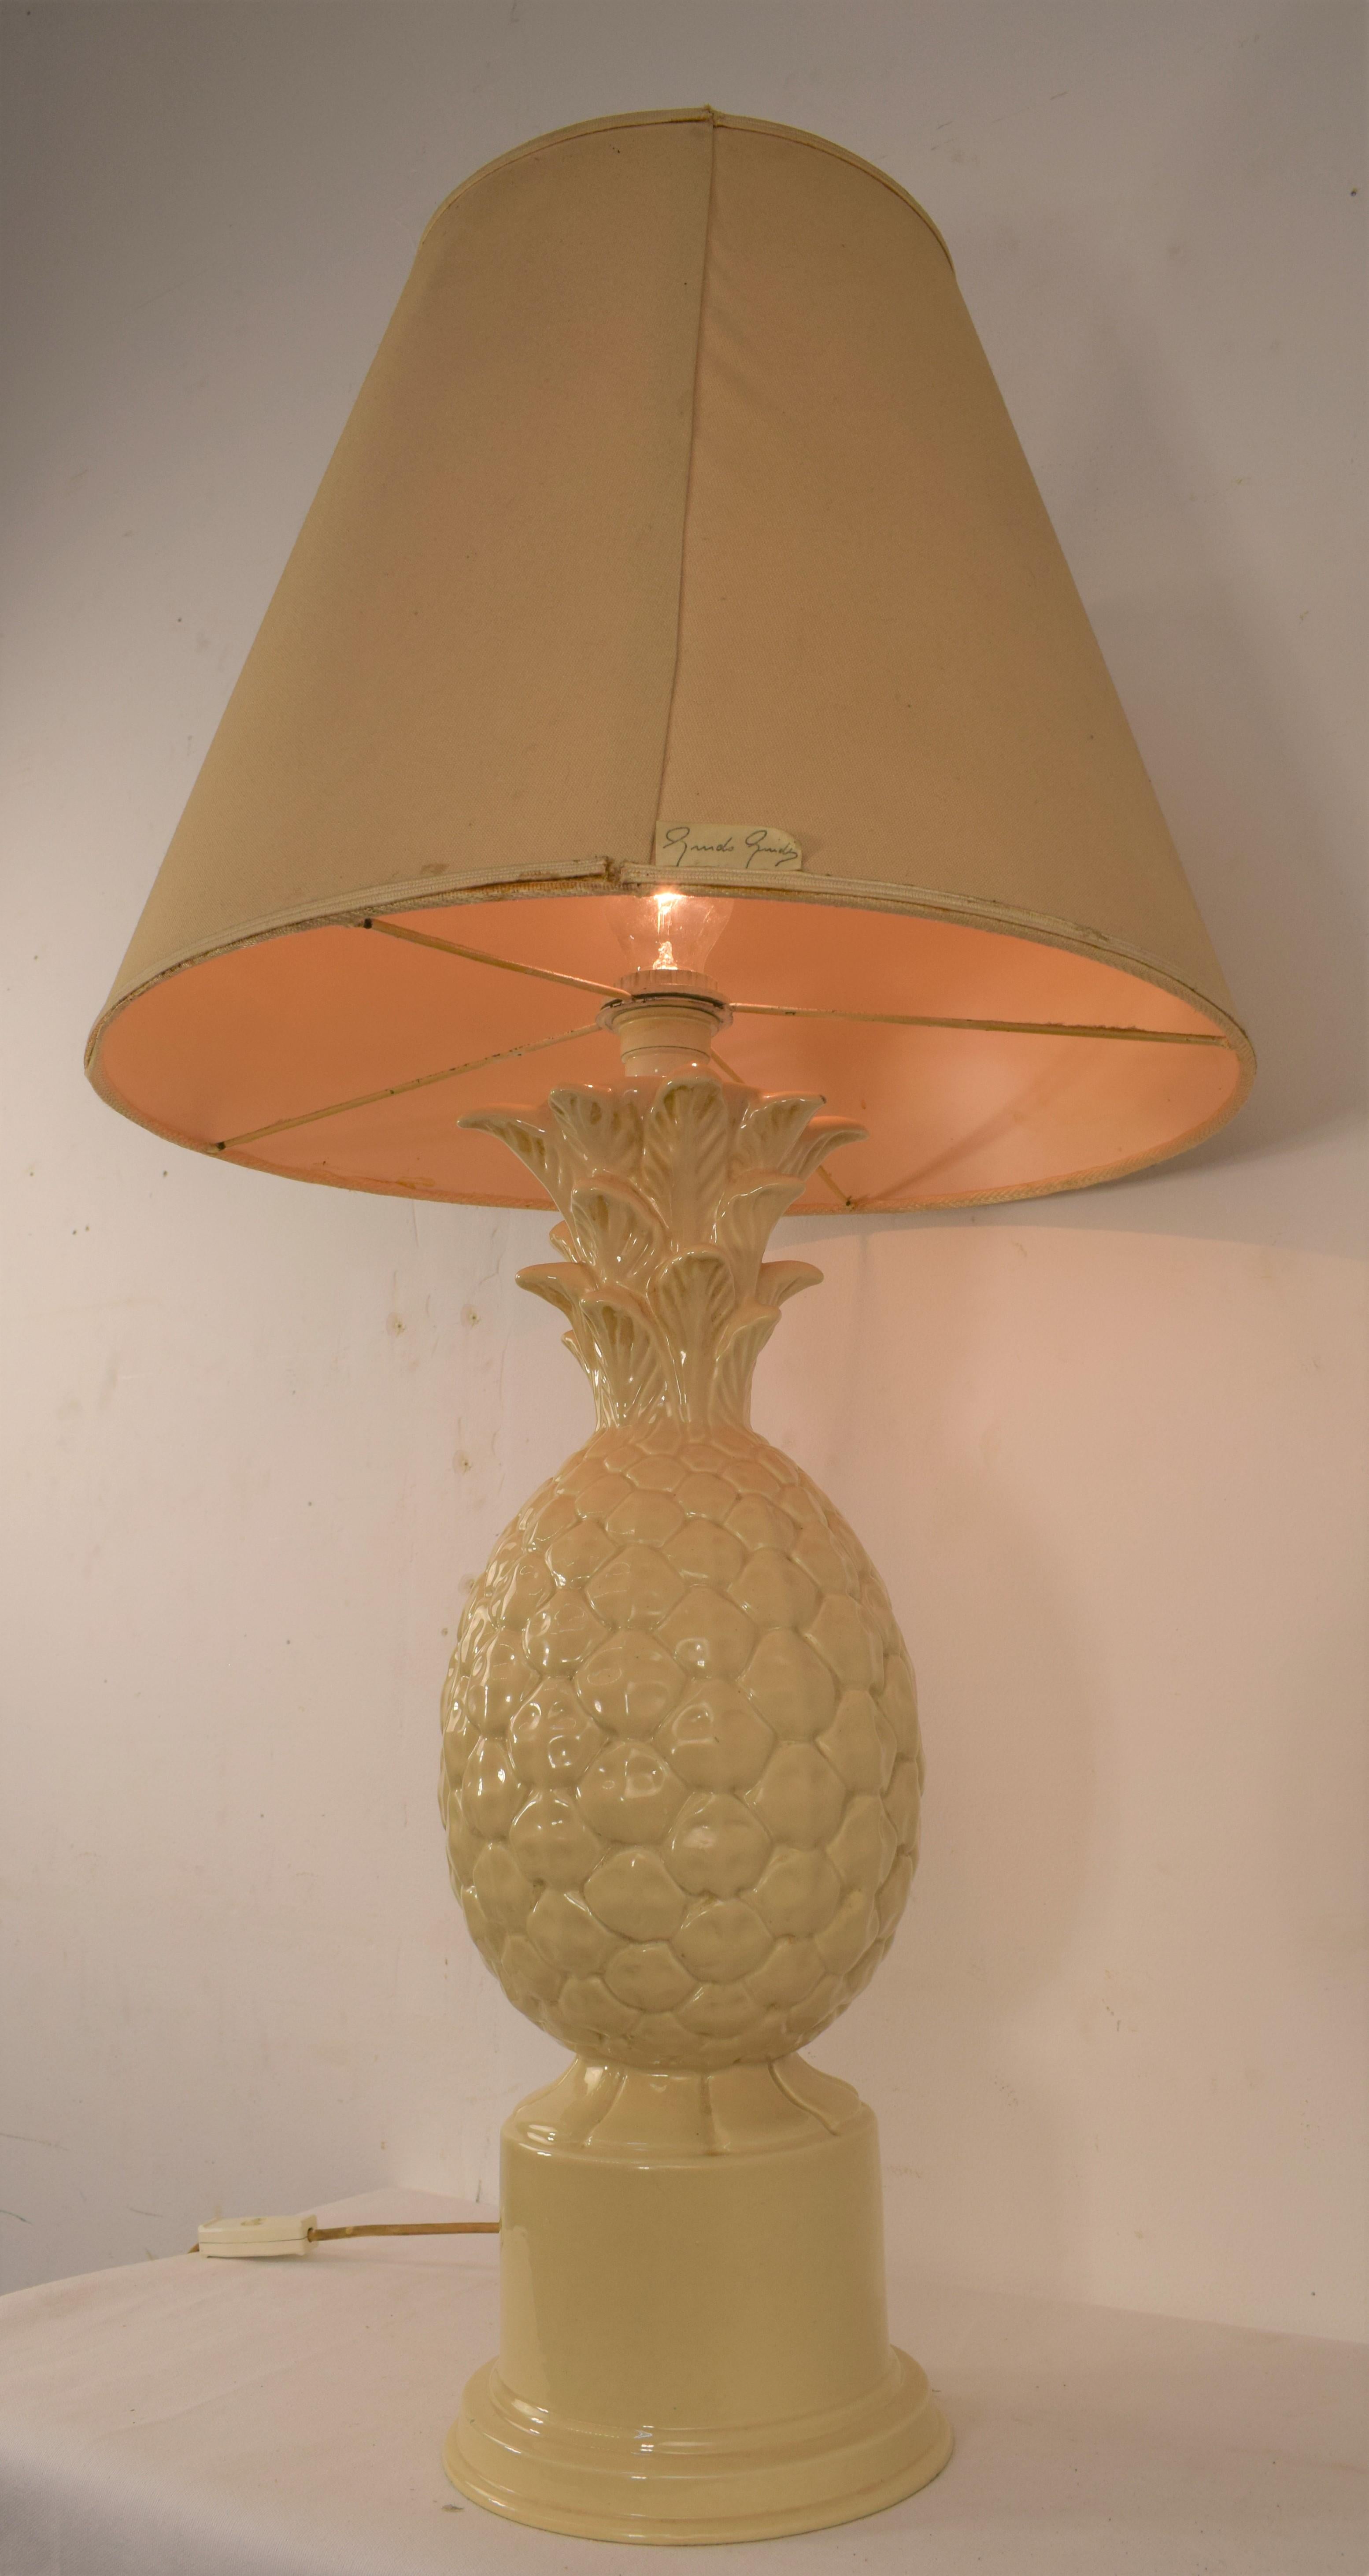 Italienische Keramik-Tischlampe, 1960er Jahre.
Abmessungen: H= 90 cm; D= 50 cm
Nur Lampe: H=52 cm; D=20 cm.